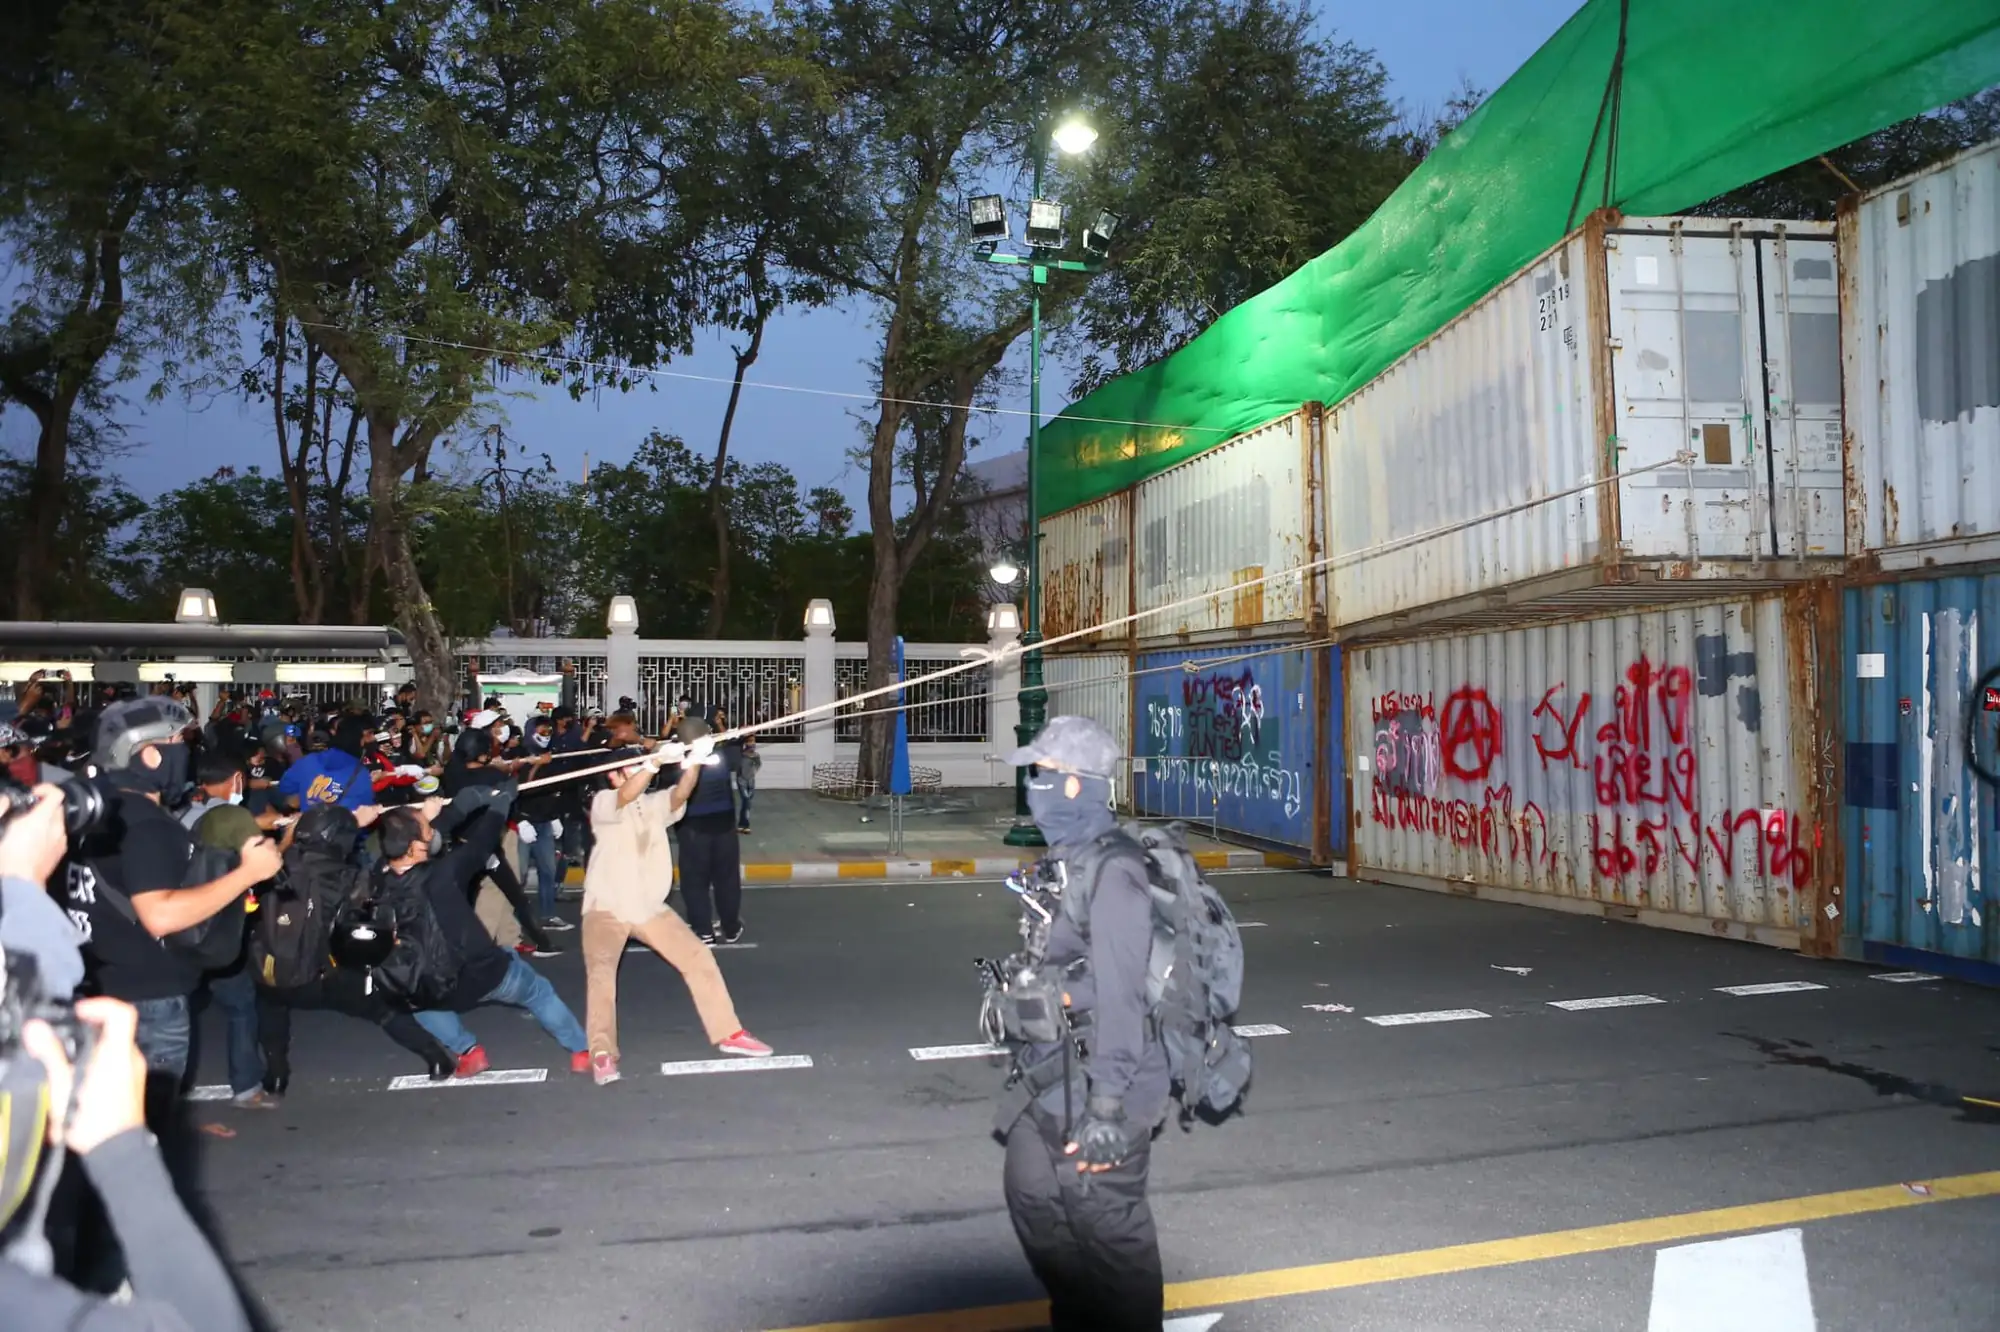  爆發激烈警民冲突的导火线是当晚有群众试图拉倒警方竖起的货柜牆，穿过王家田广场朝大王宫方向前进（图片来源：@FreeYOUTHth脸书粉专）